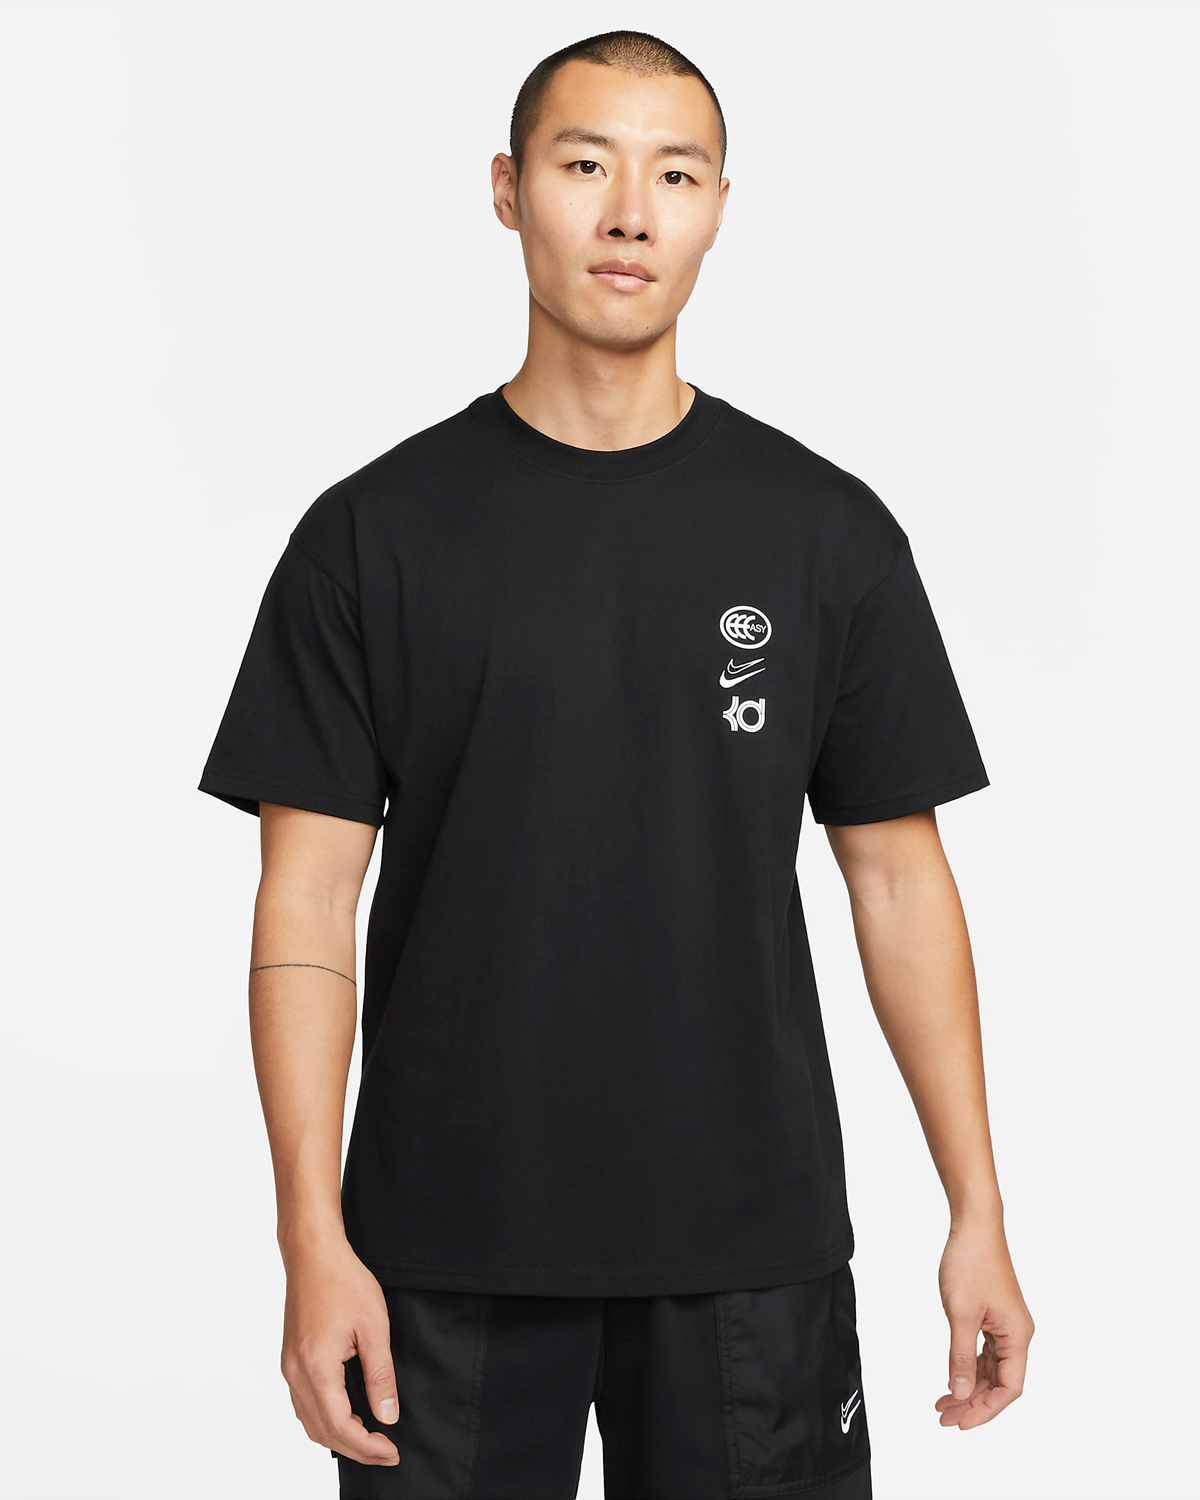 Nike-KD-Kevin-Durant-T-Shirt-Black-White-1